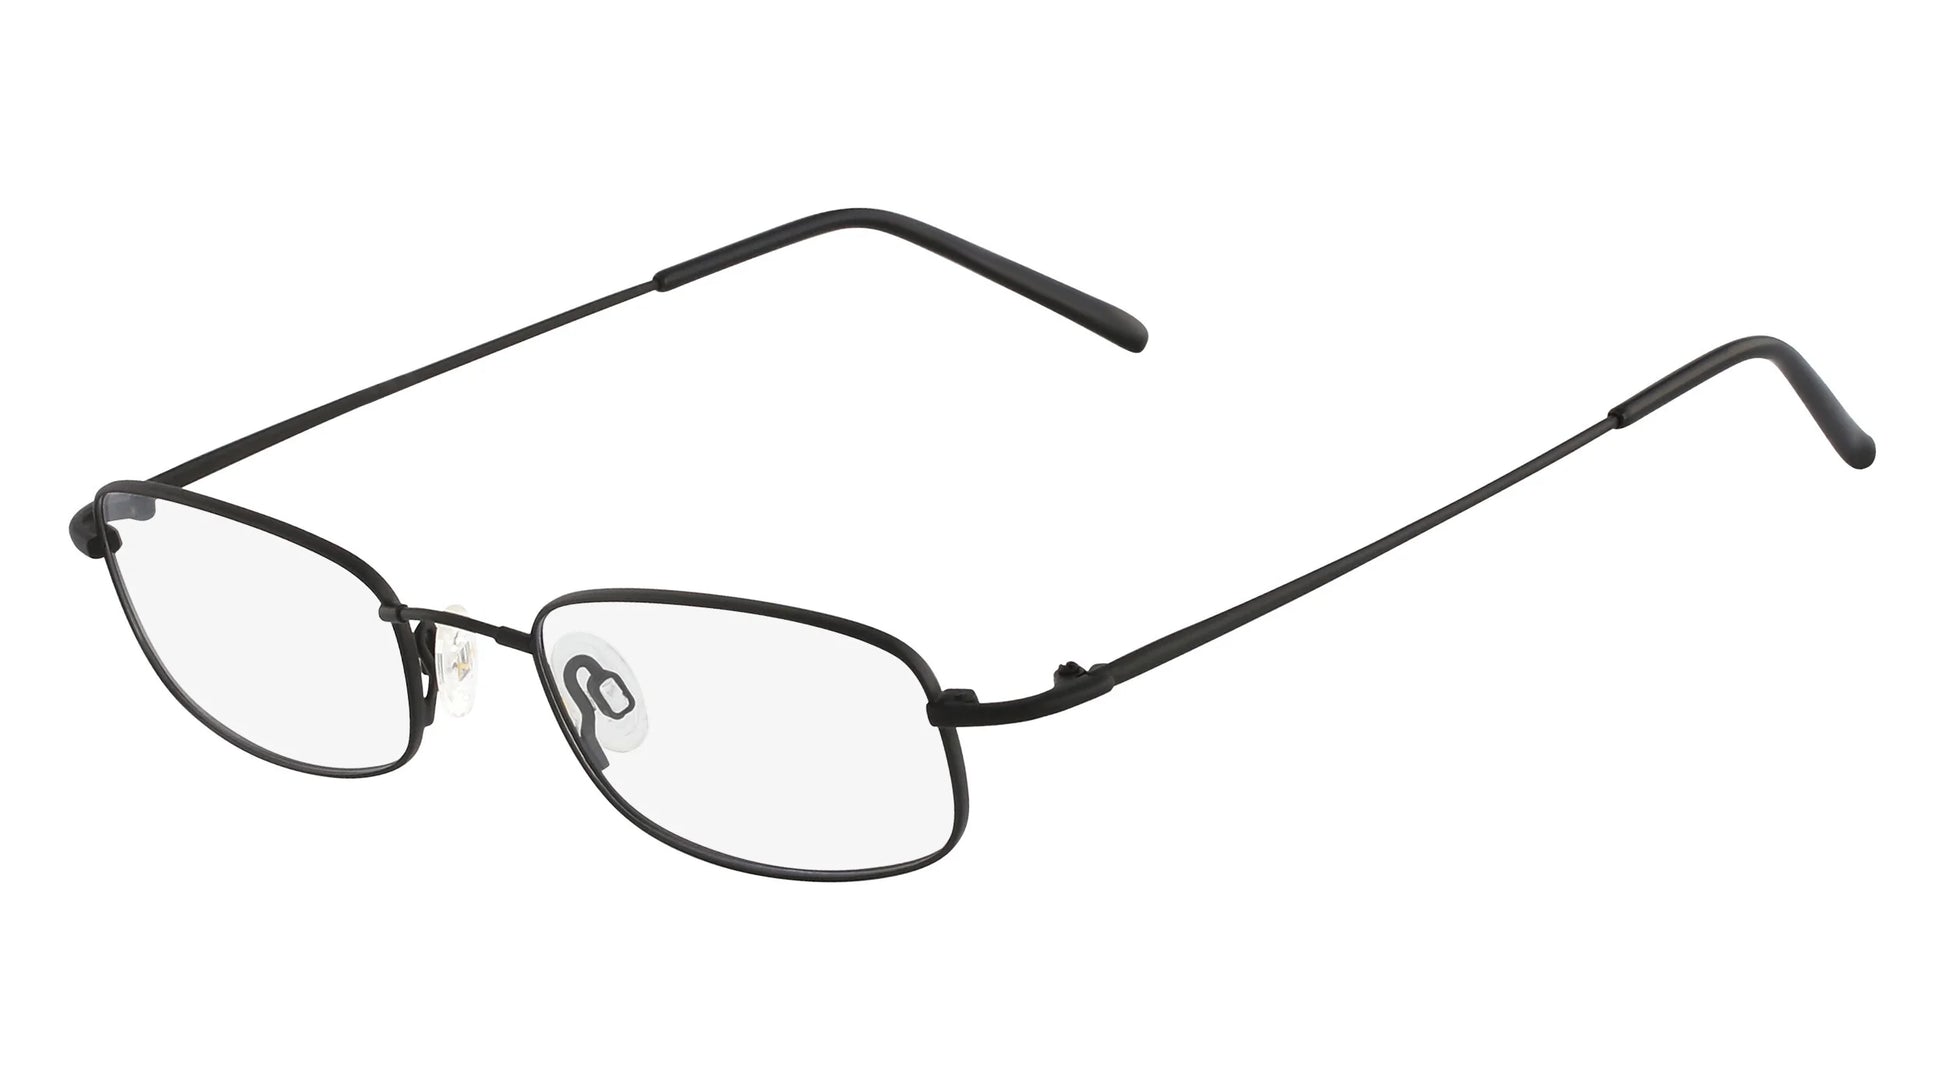 Flexon 603 Eyeglasses Mat Black